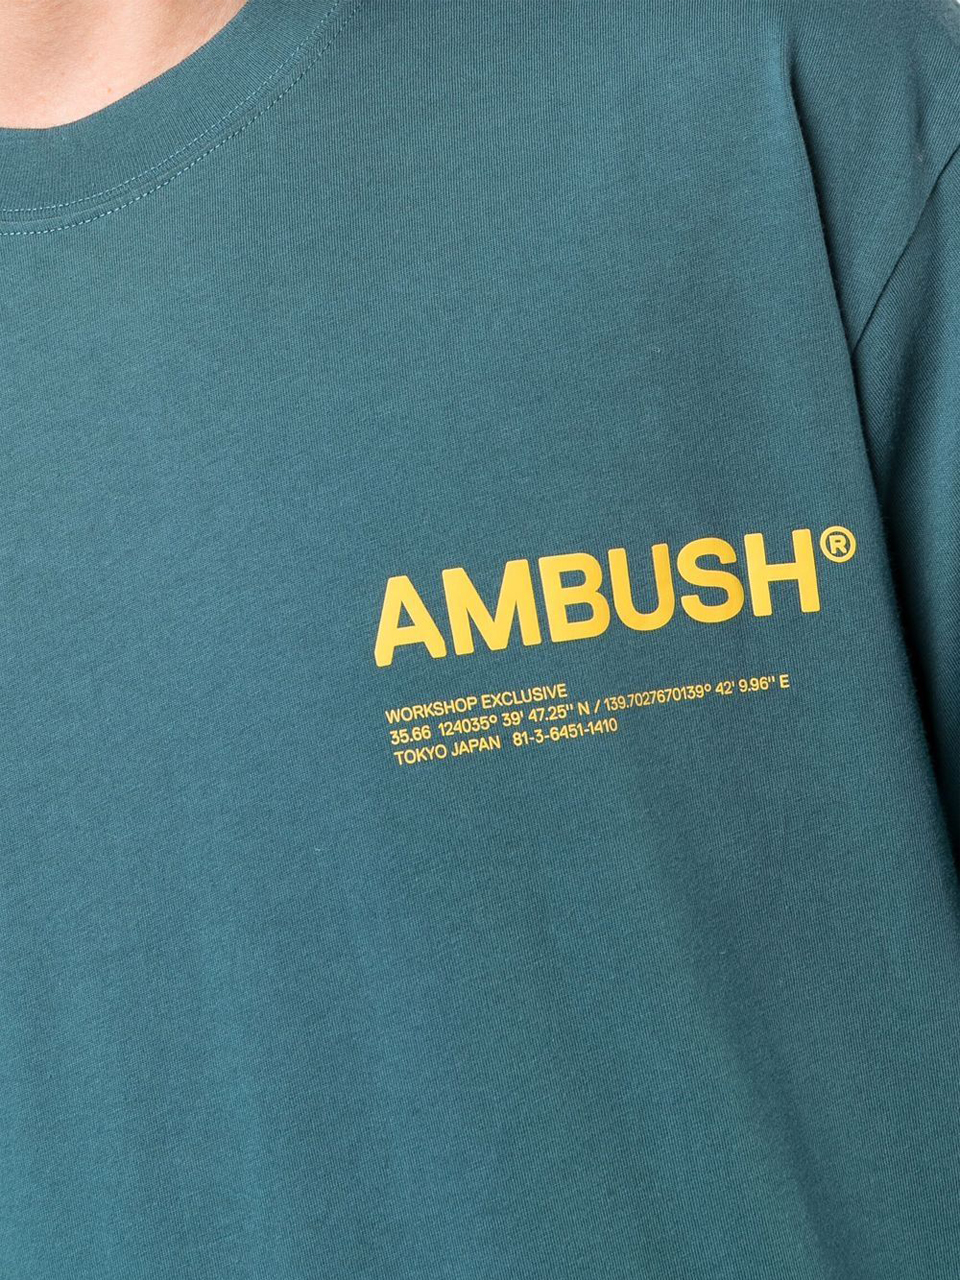 Imagem de: Camiseta AMBUSH Azul com Logo